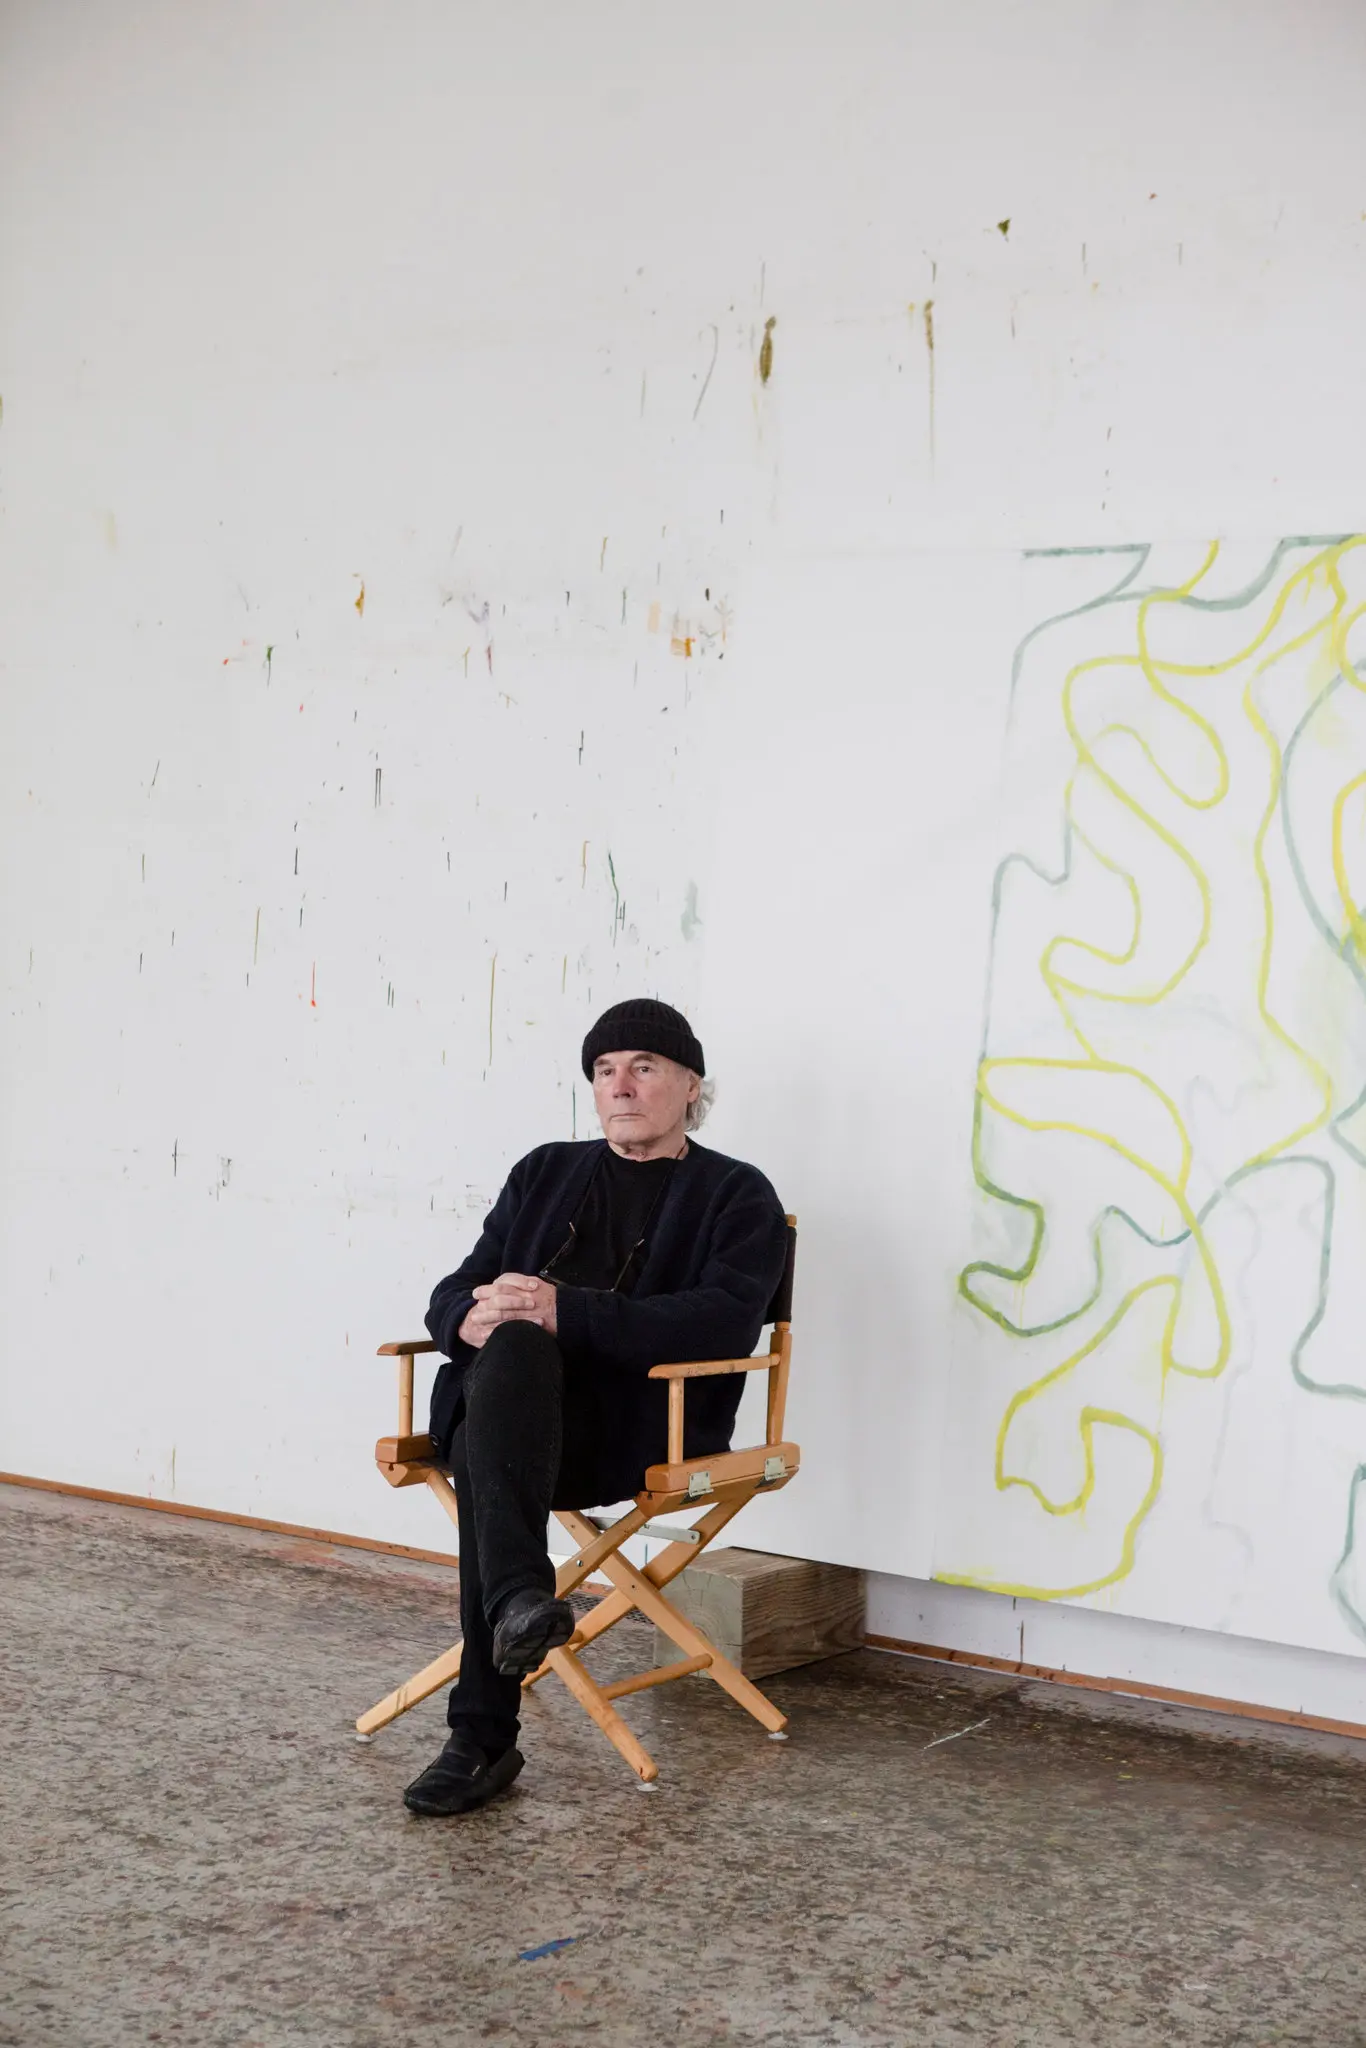 Brice Marden em seu estúdio em Tivoli, NY, em 2018. Suas pinturas, exibidas pela primeira vez em Nova York em 1966, o levaram ao estrelato no mundo da arte quando ele ainda tinha 20 anos.Crédito...Lauren Lancaster para o New York Times